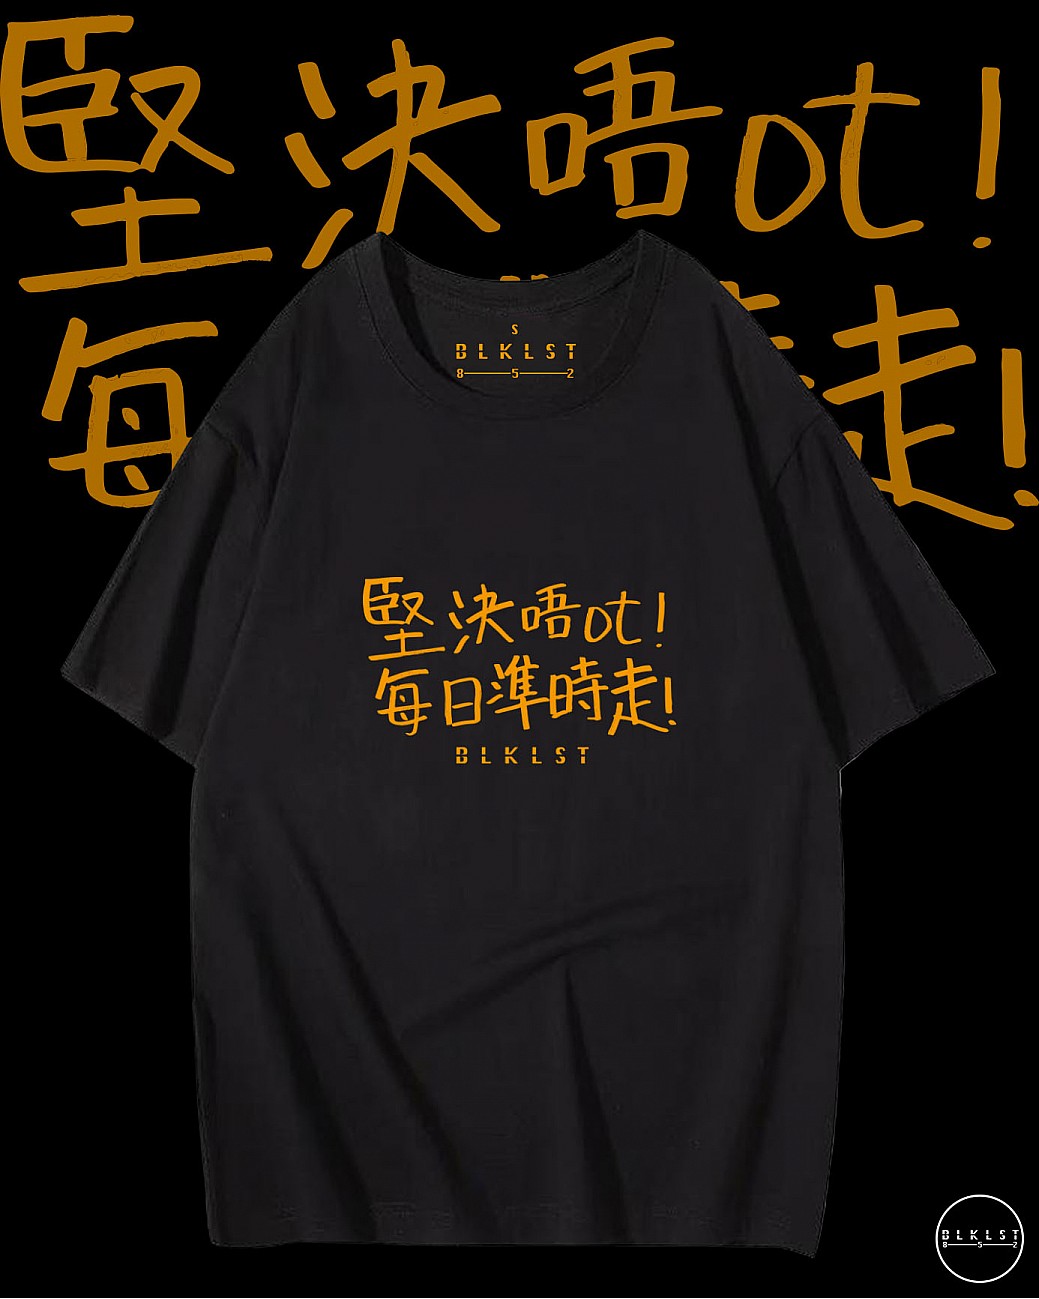 「堅決唔OT」T恤